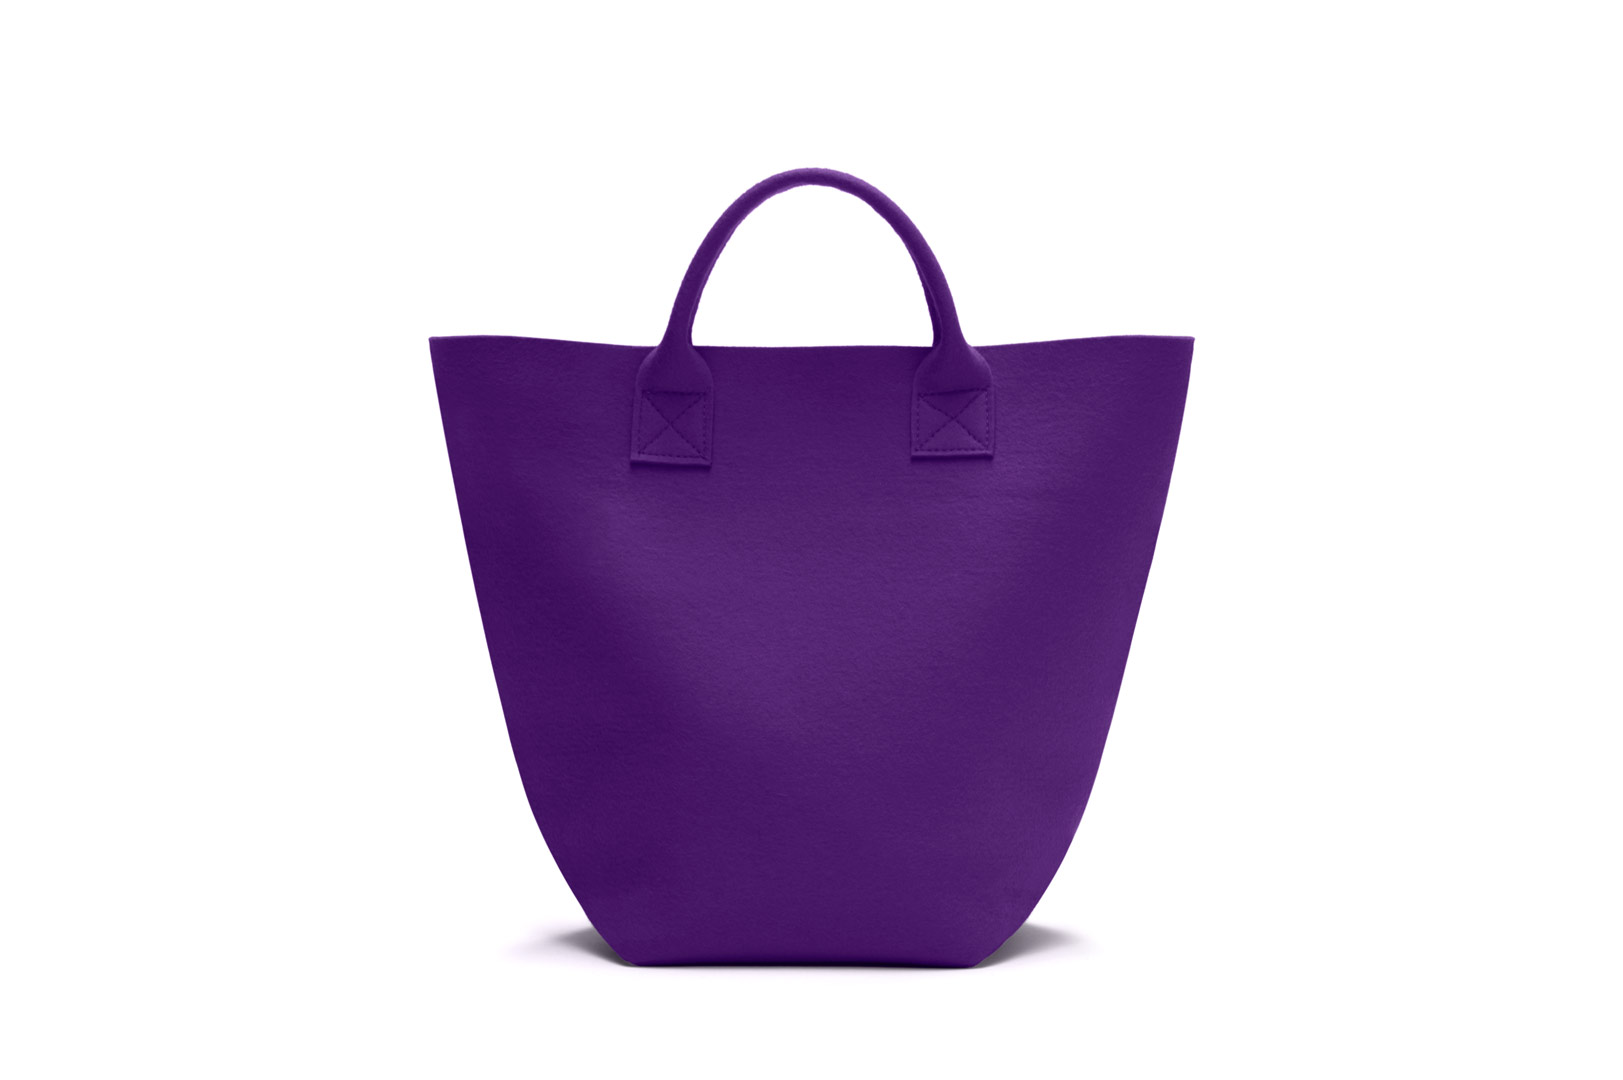 HEY-Sign Filztasche Carry in der Farbe "Violett"